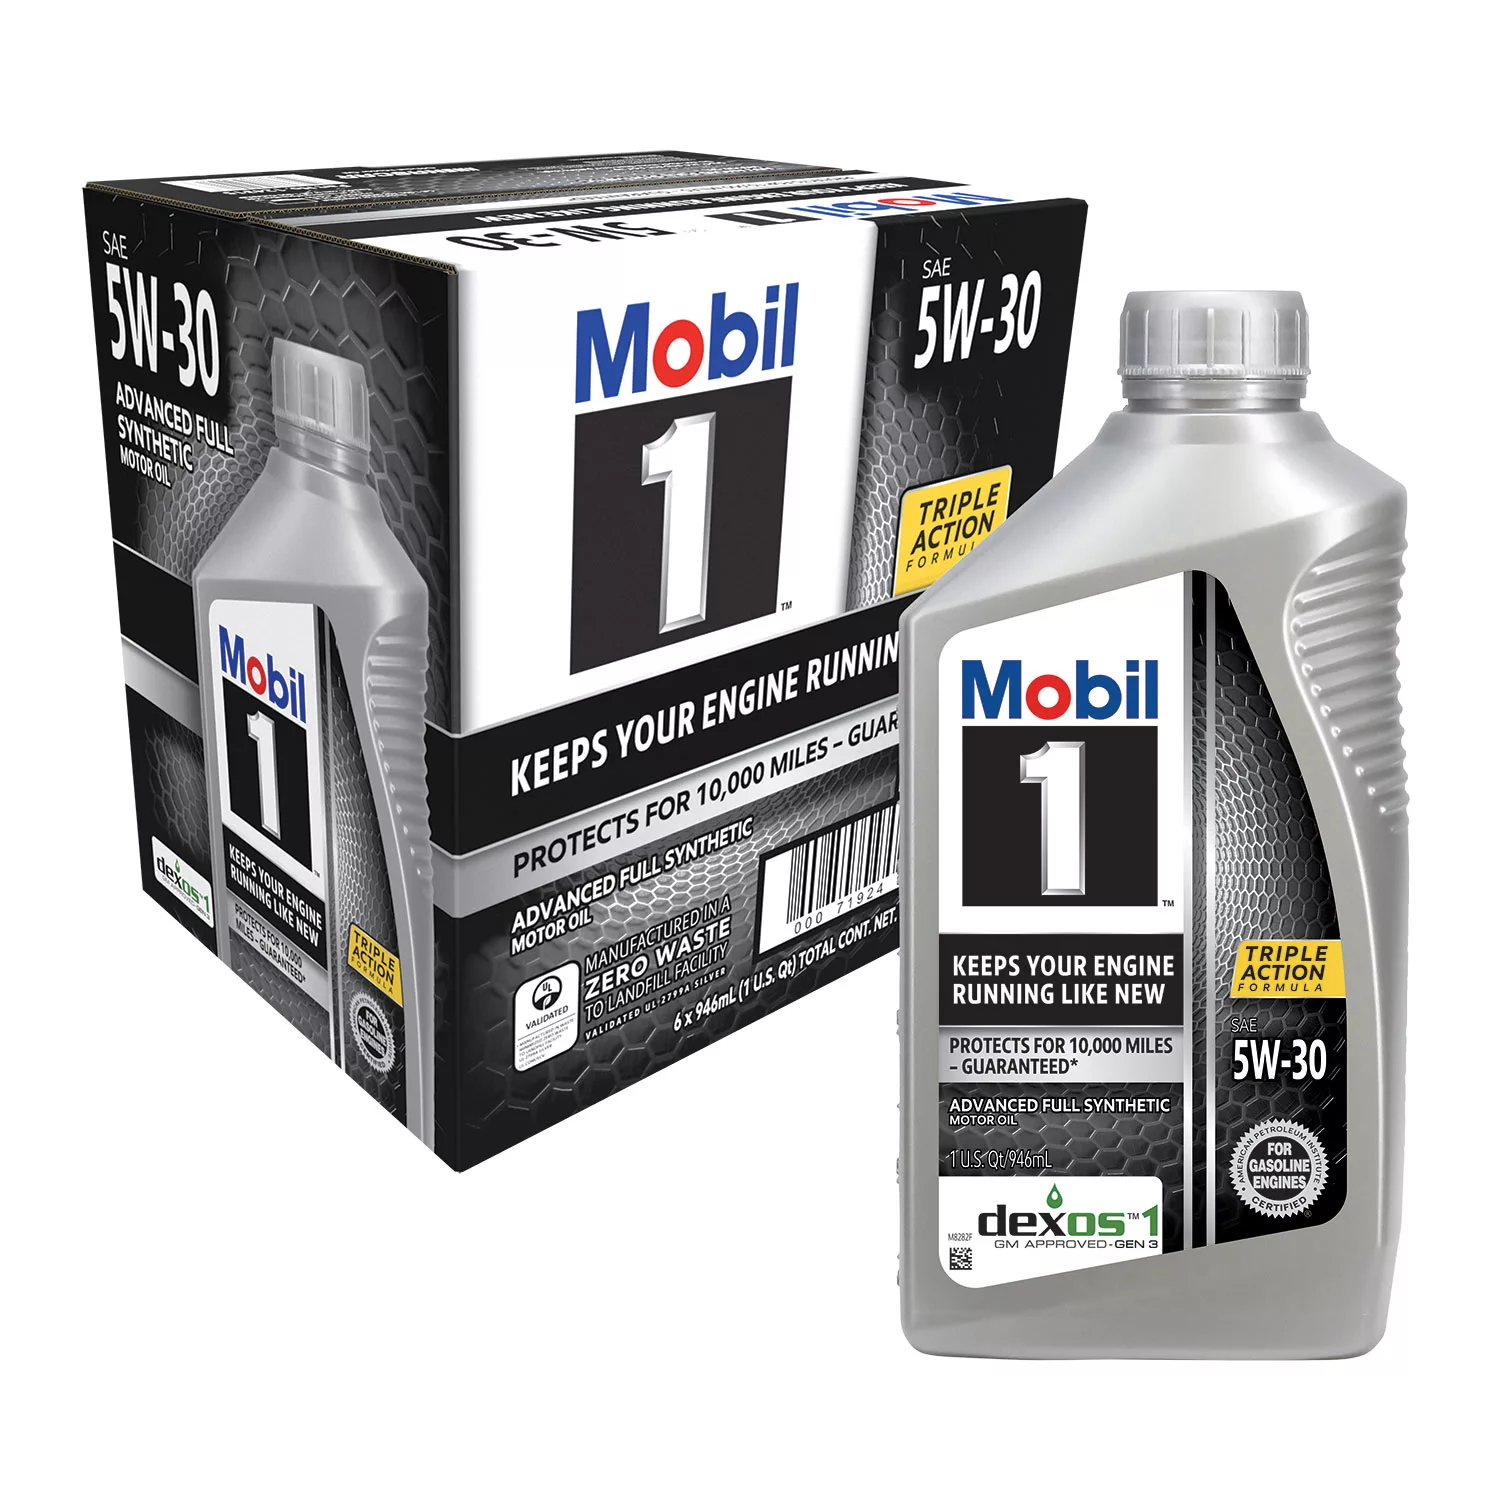 Mobil 1 5W-30 Motor Oil 6 pack, 1-quart bottles